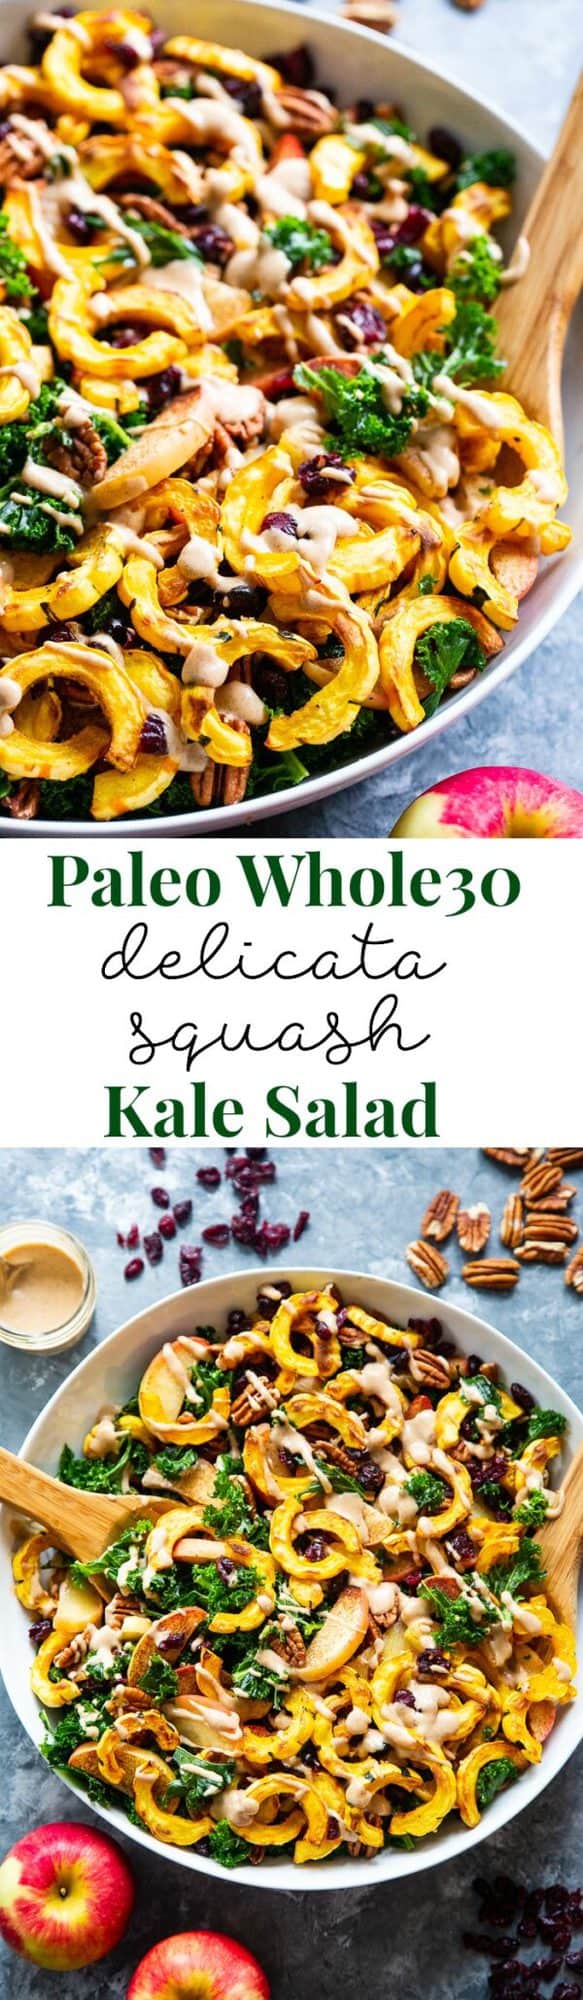 Roasted Delicata Squash Harvest Kale Salad {Paleo, Whole30}